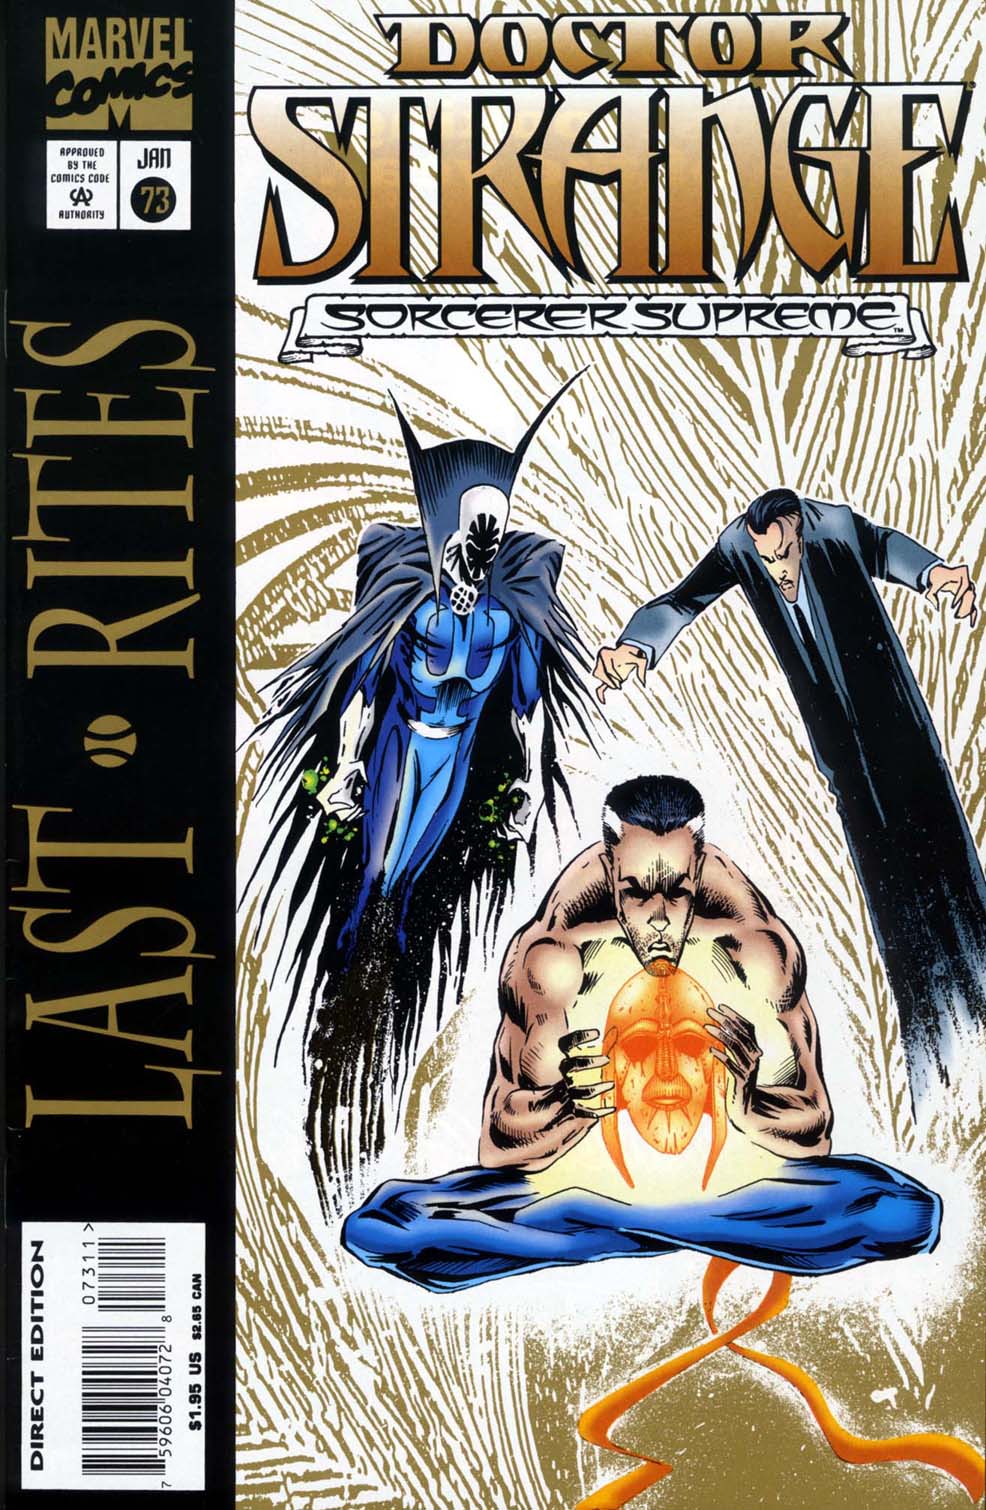 Read online Doctor Strange: Sorcerer Supreme comic -  Issue #73 - 1